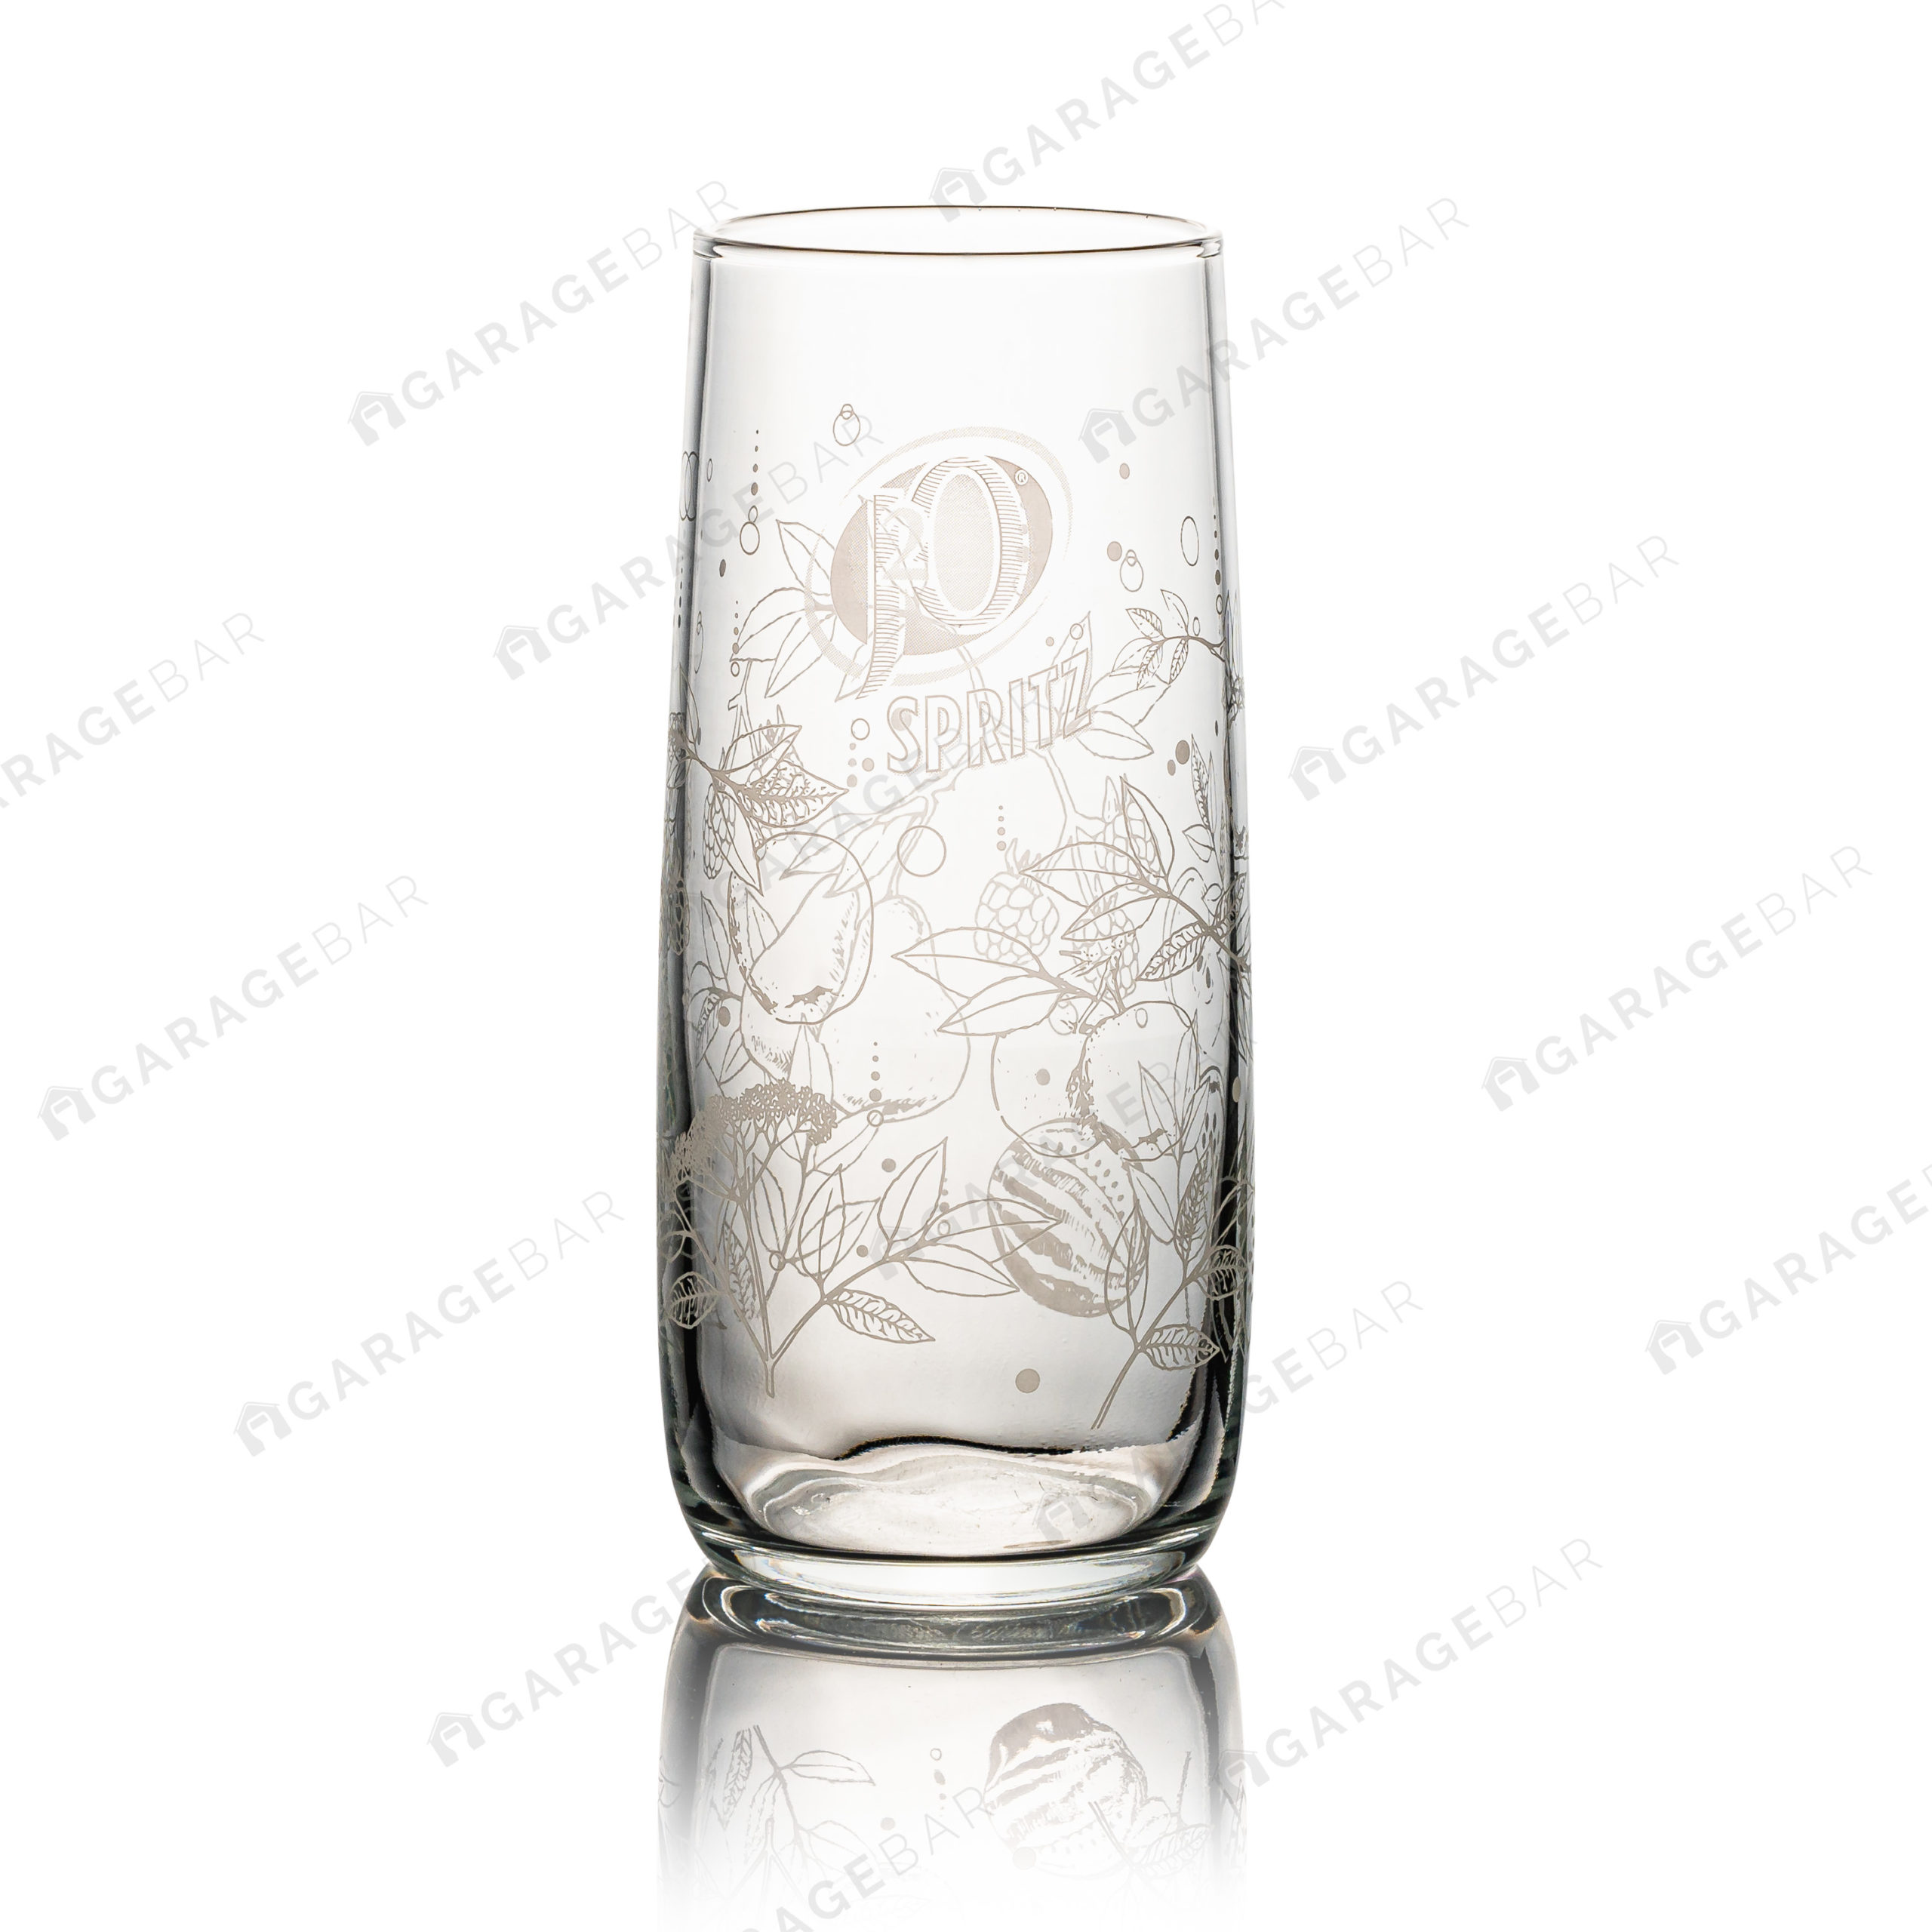 J2O Spritz Glass